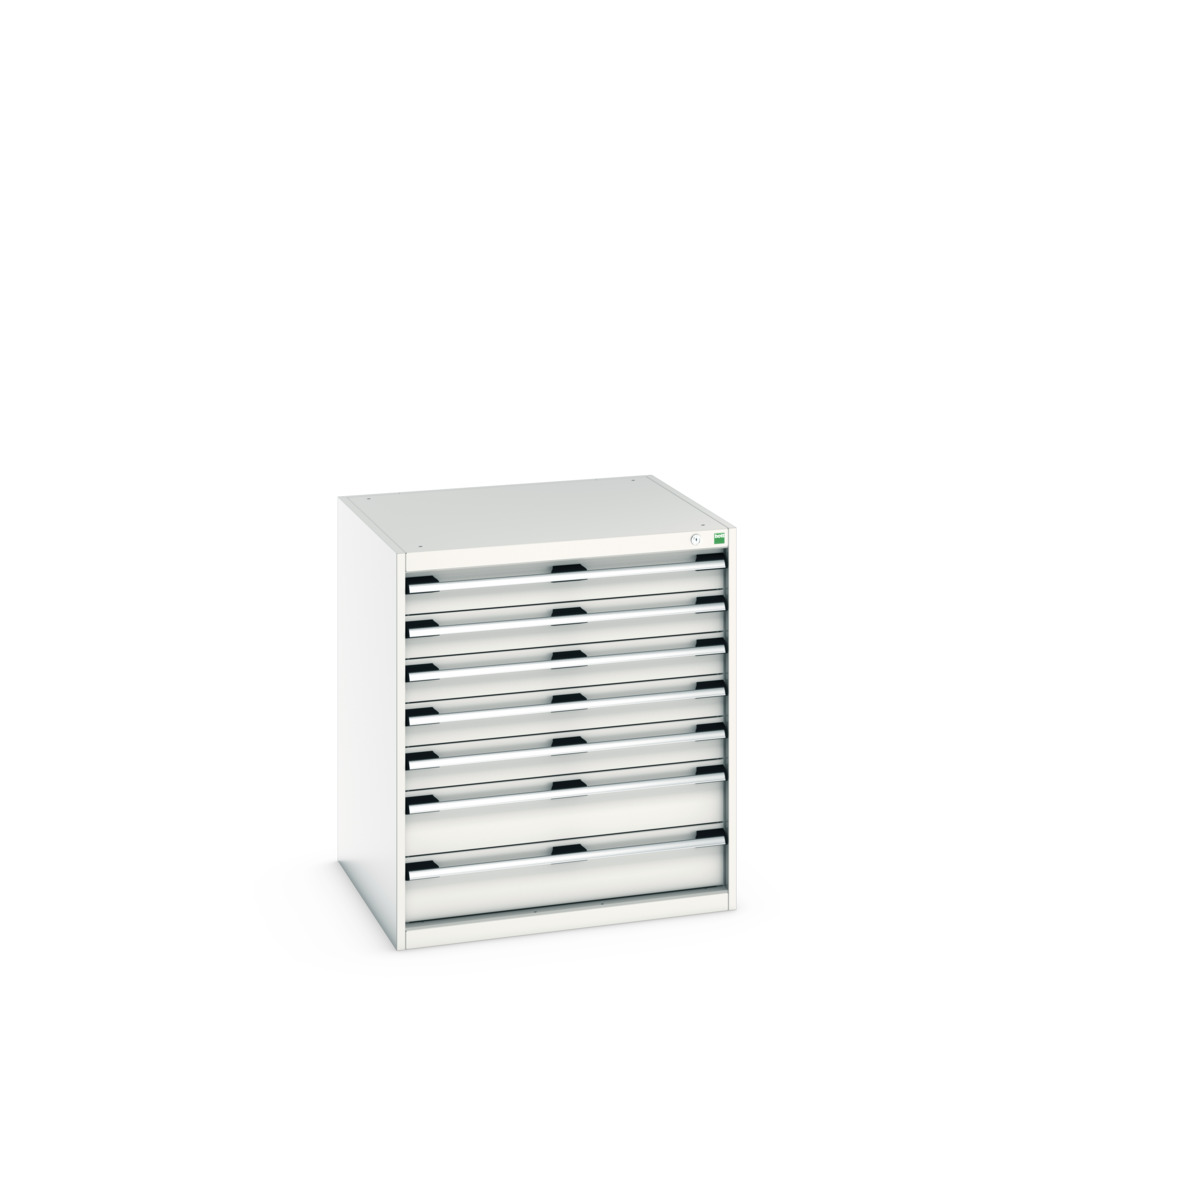 40028108.16V - cubio drawer cabinet